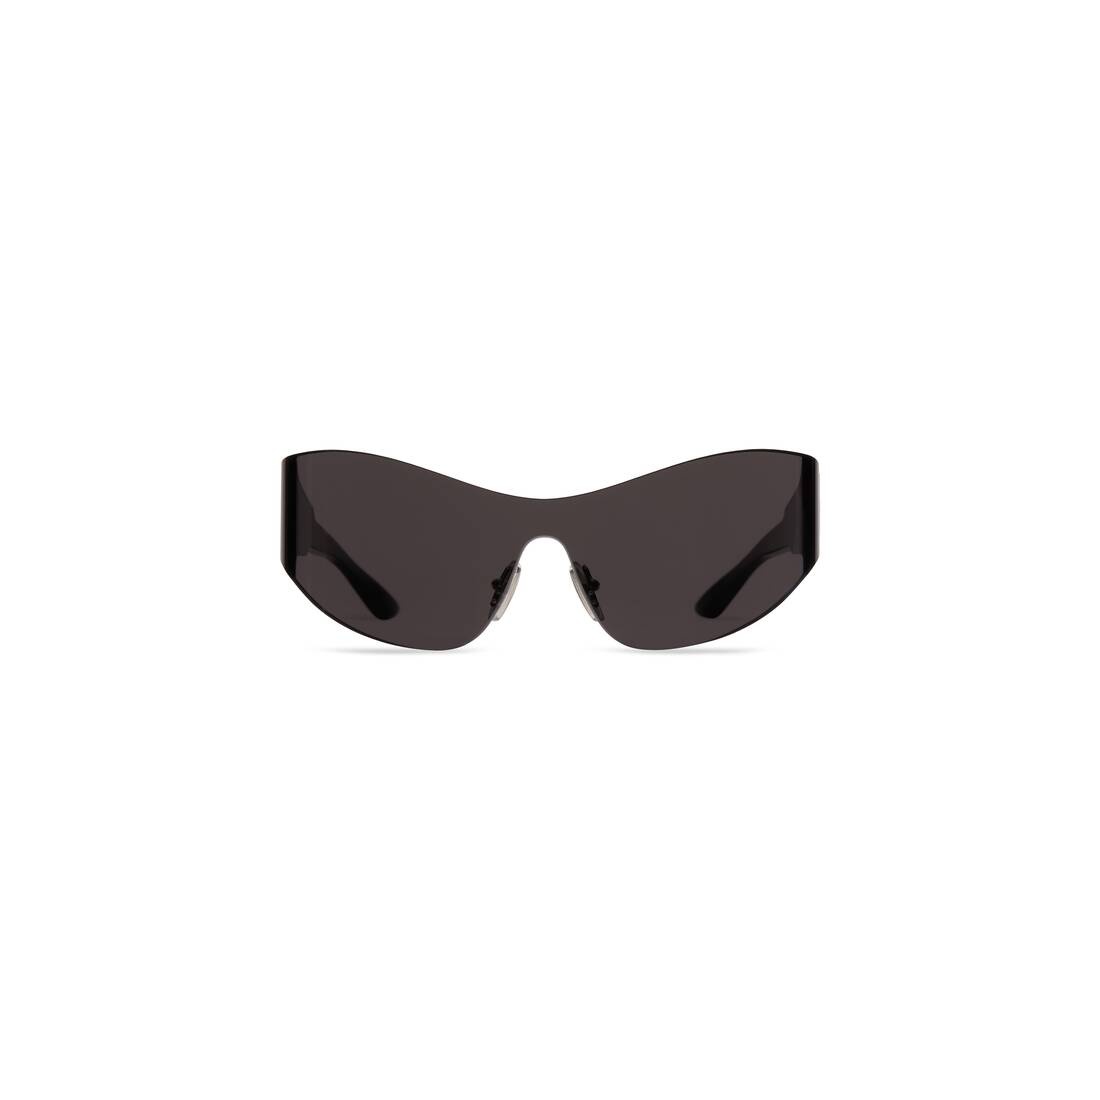 Mono Cat 2.0 Sunglasses in Black - 1